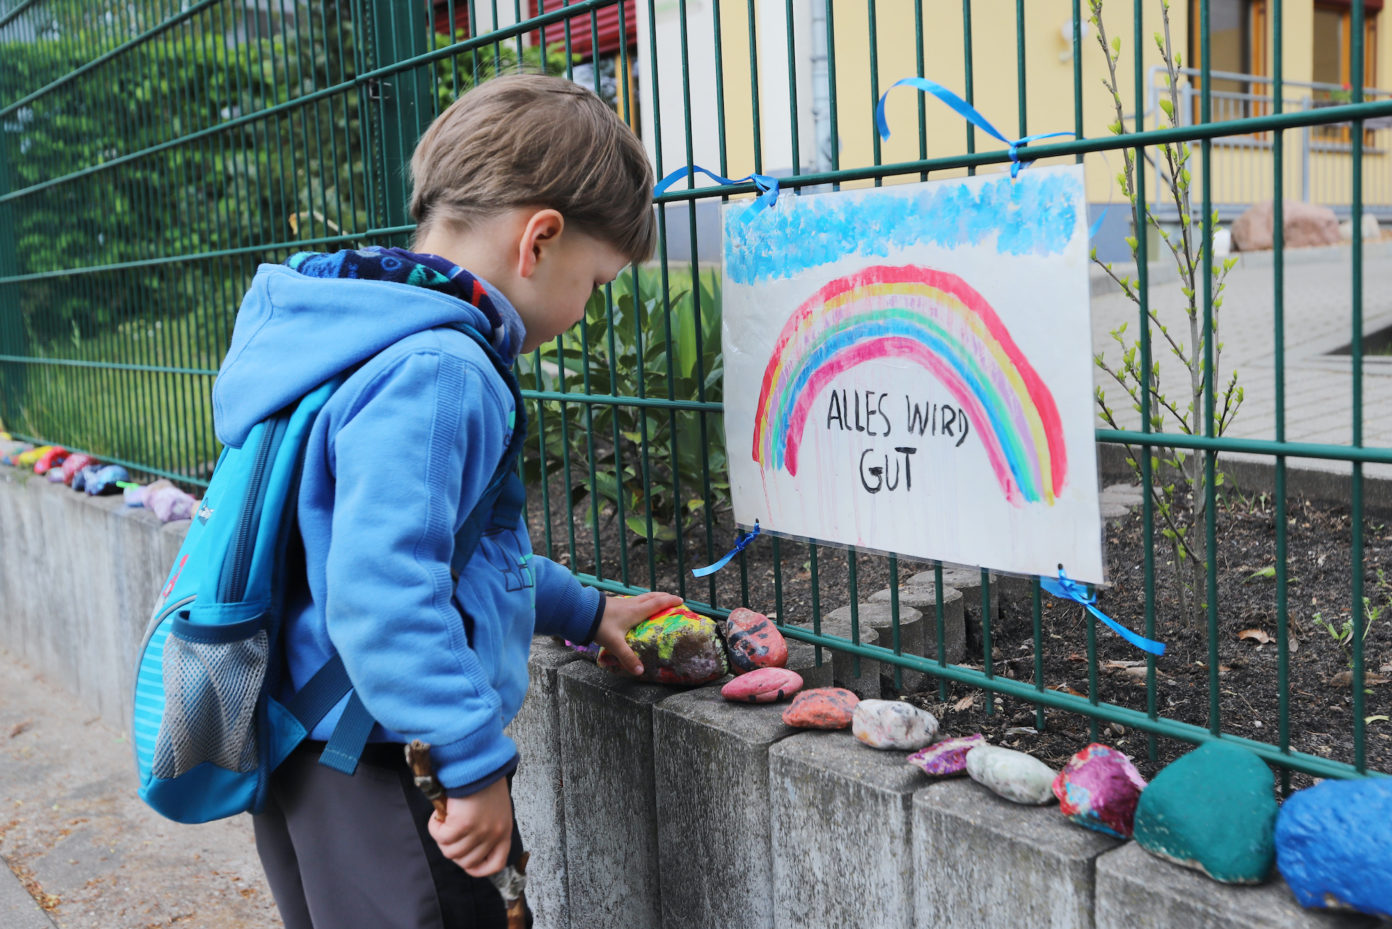 Ein kleiner Junge legt während der Corona-Zeit am Zaun vor seinem geschlossenen Kindergarten einen bemalten Stein unter ein Plakat mit Regenbogen, auf dem steht "Alles wird gut".